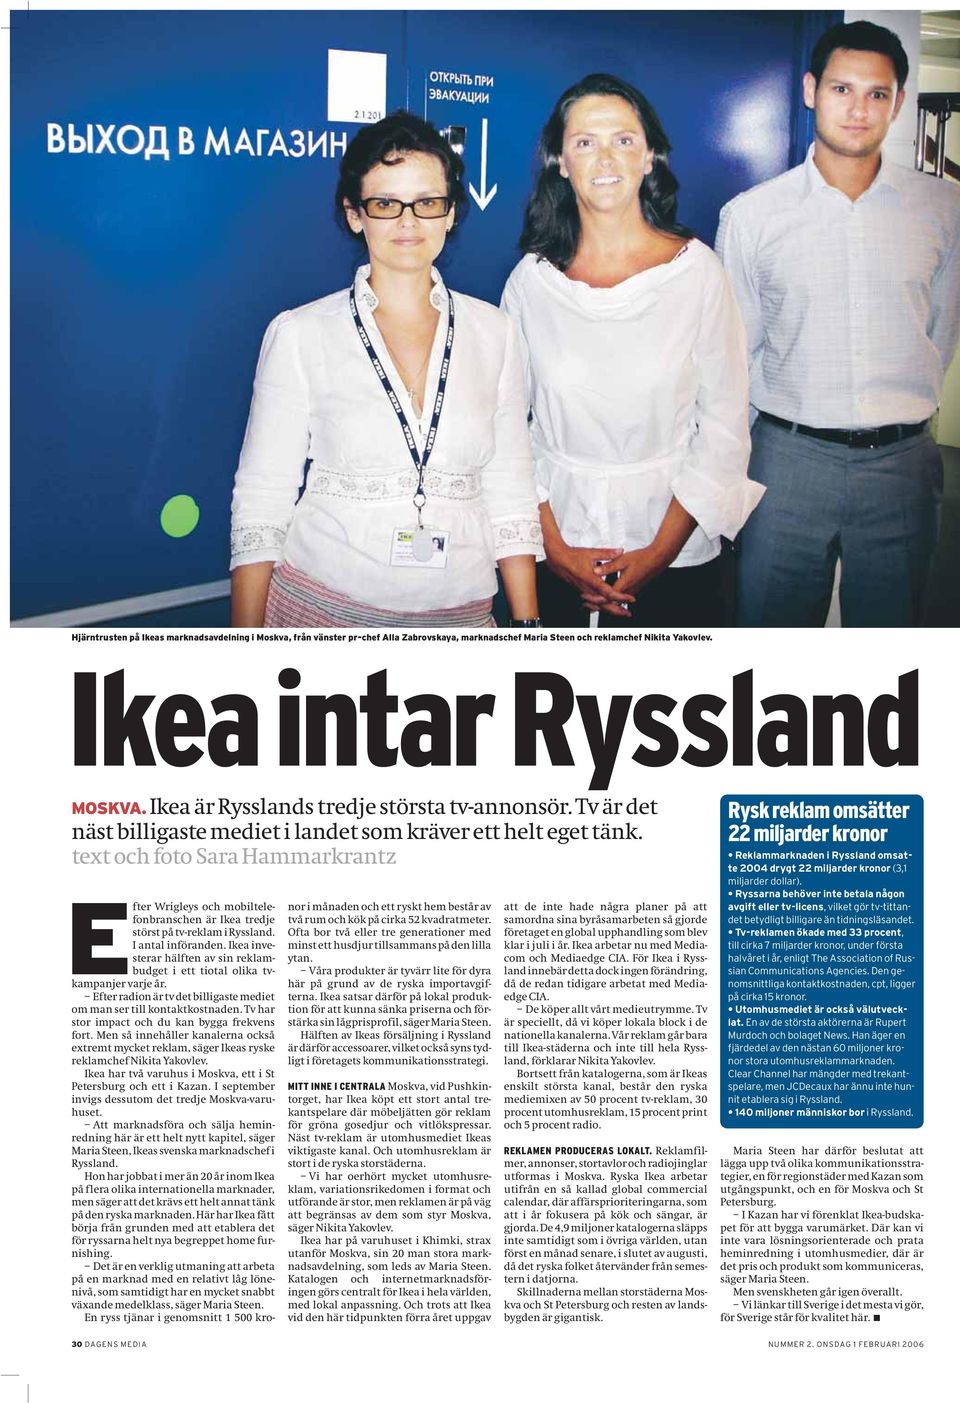 text och foto Sara Hammarkrantz Efter Wrigleys och mobiltelefonbranschen är Ikea tredje störst på tv-reklam i Ryssland. I antal införanden.